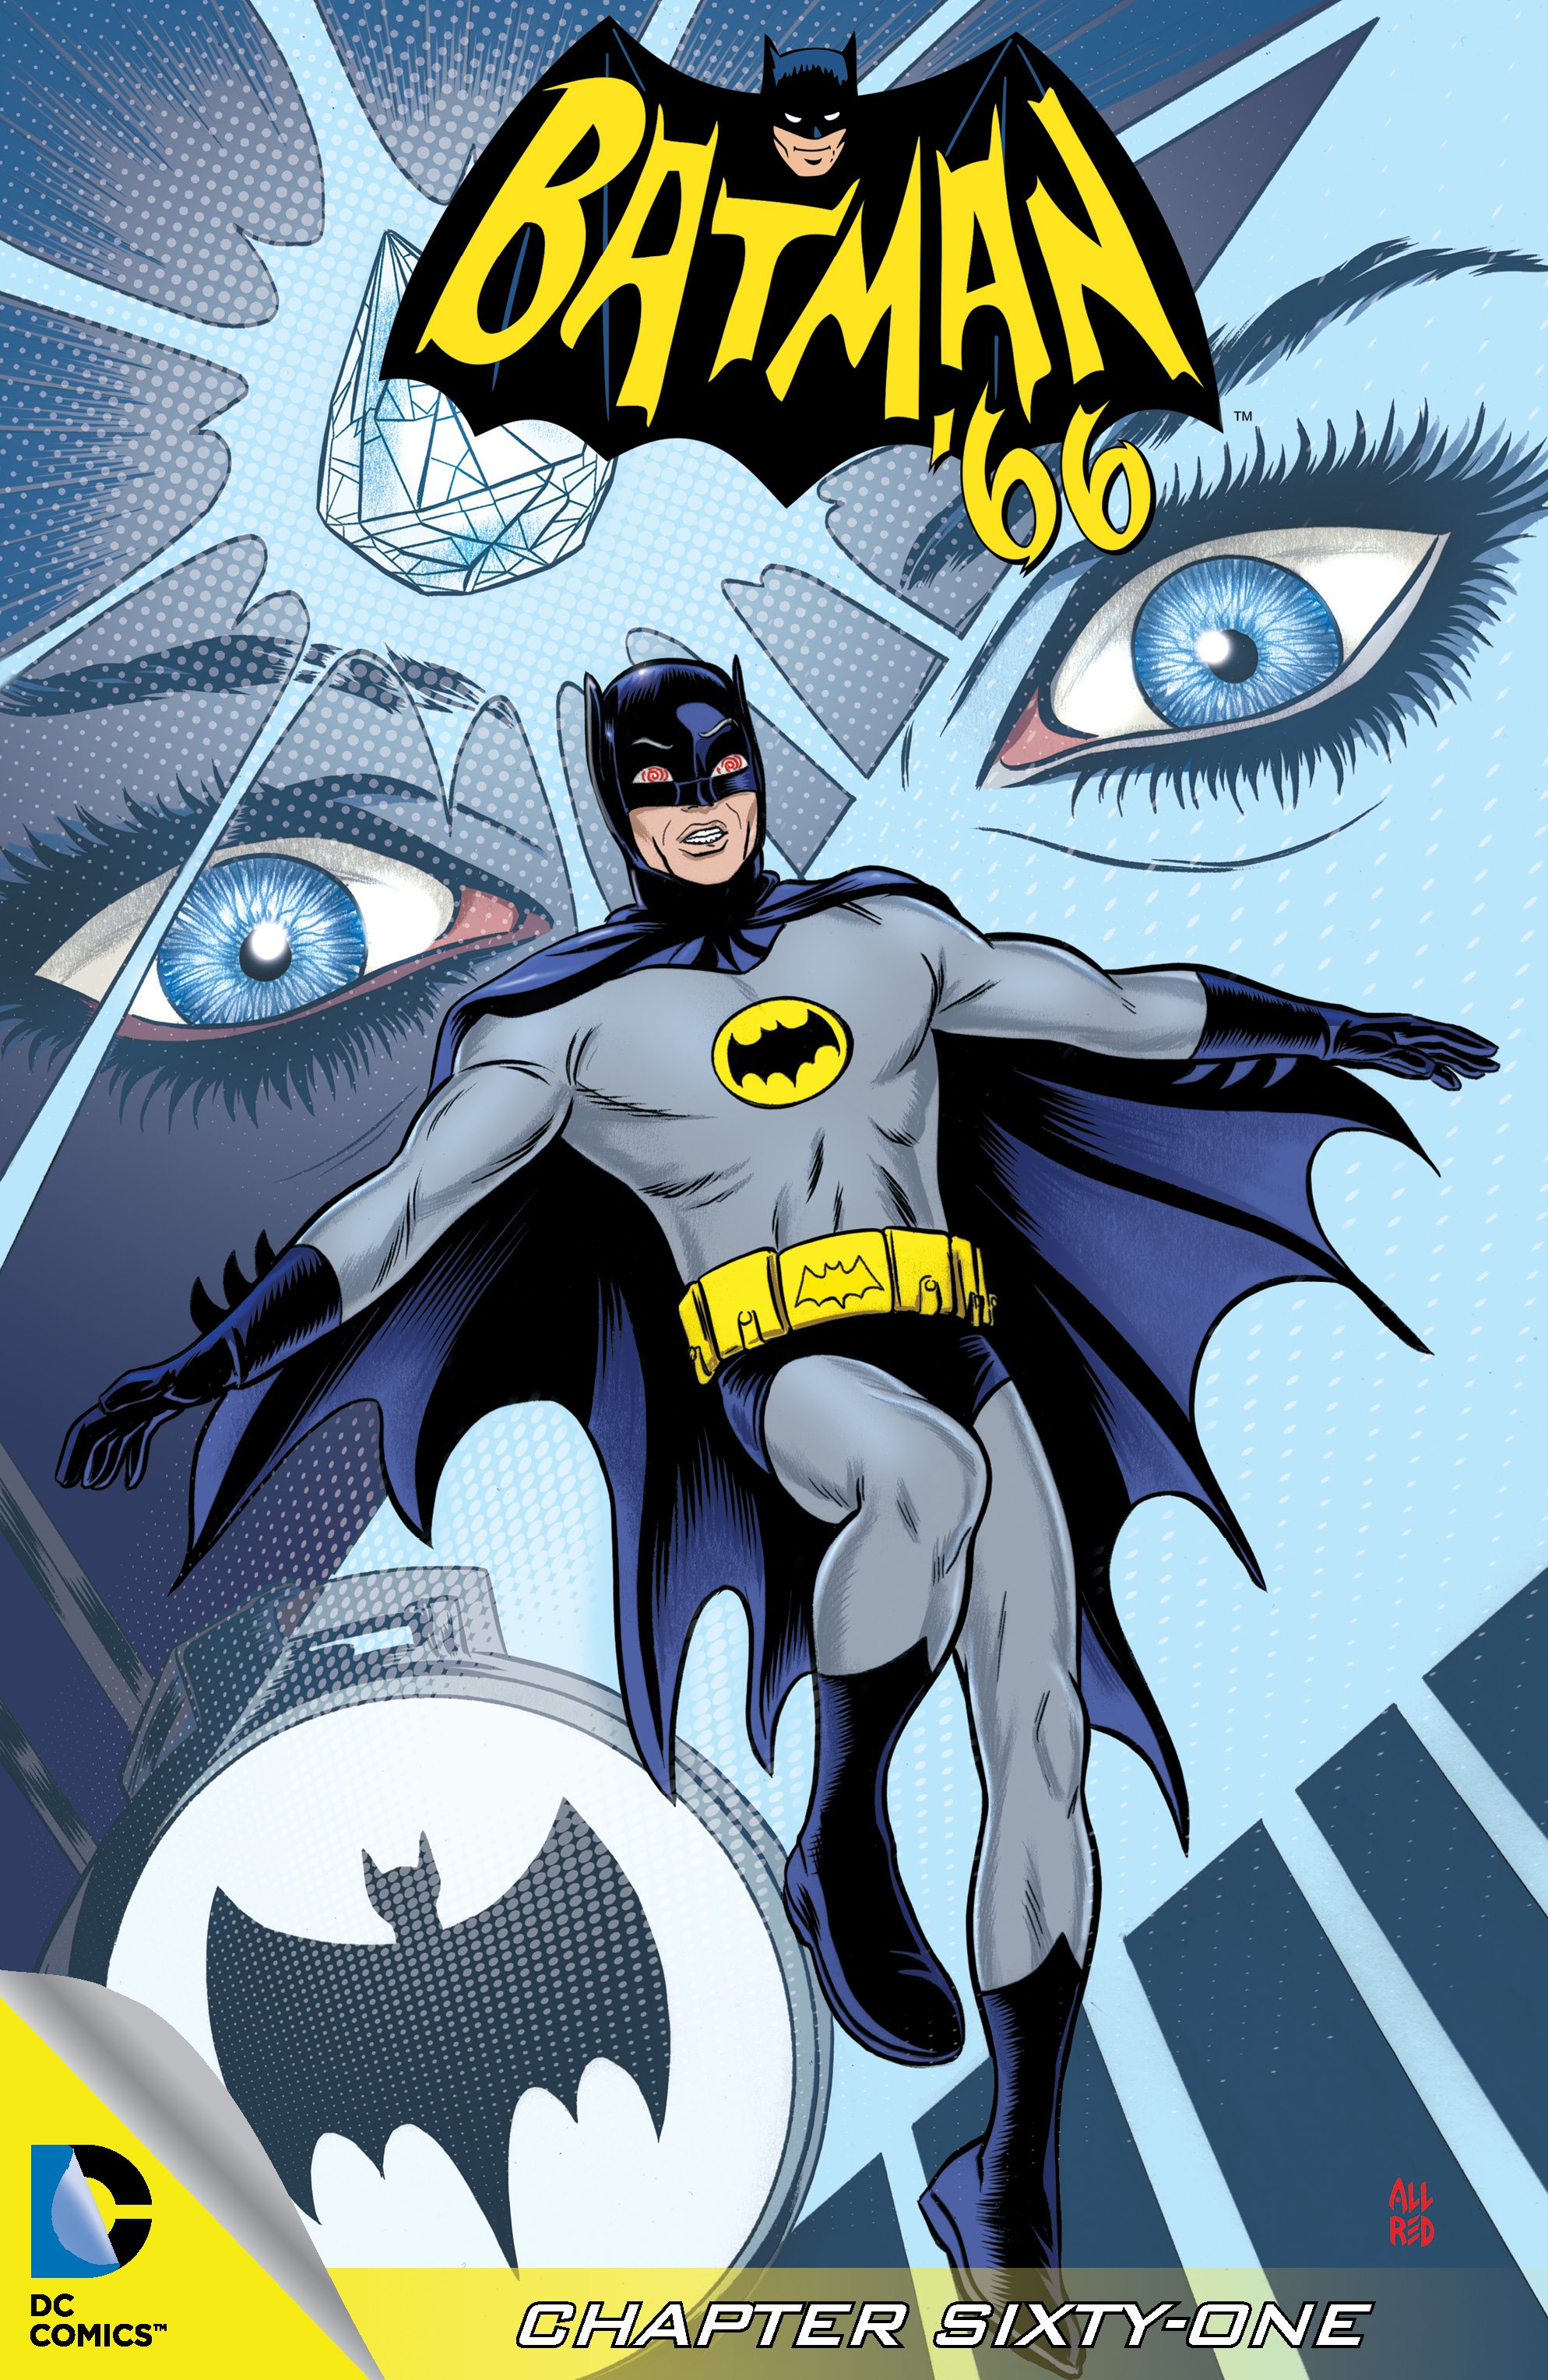 Batman '66 #61 preview images